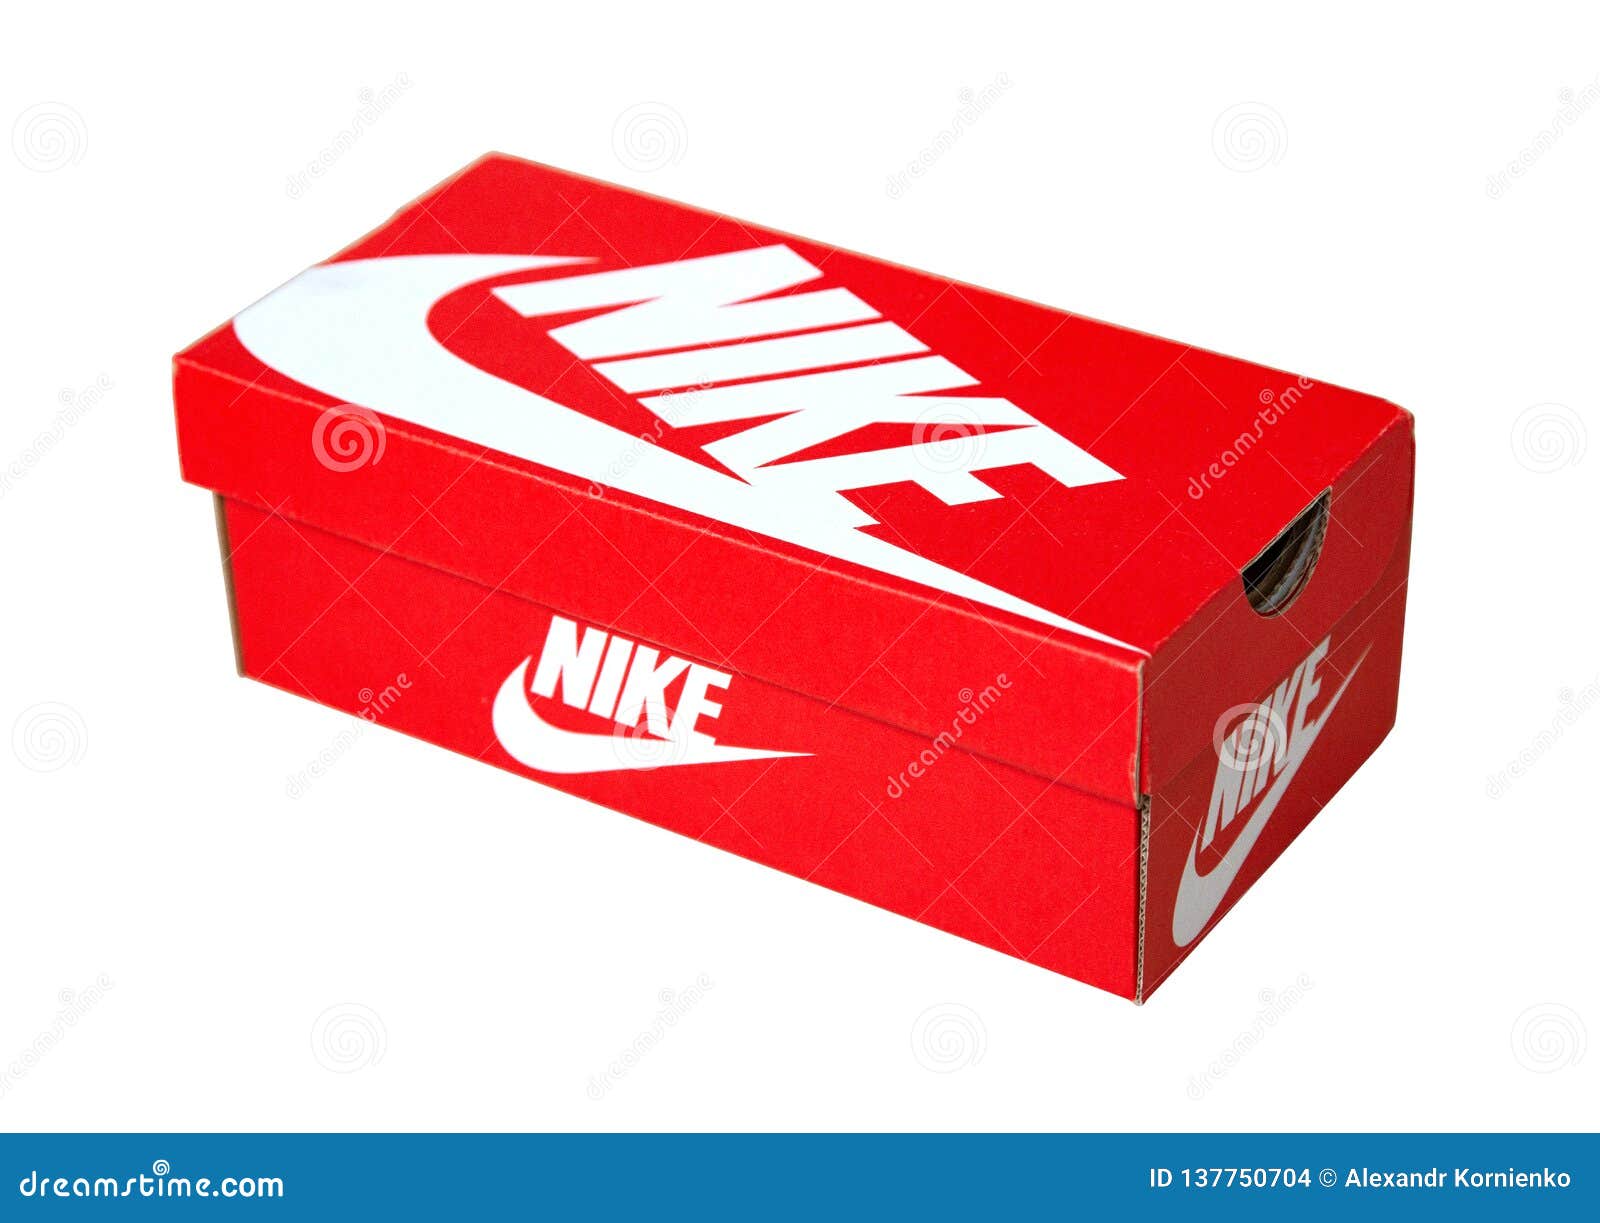 cajas de zapatillas nike